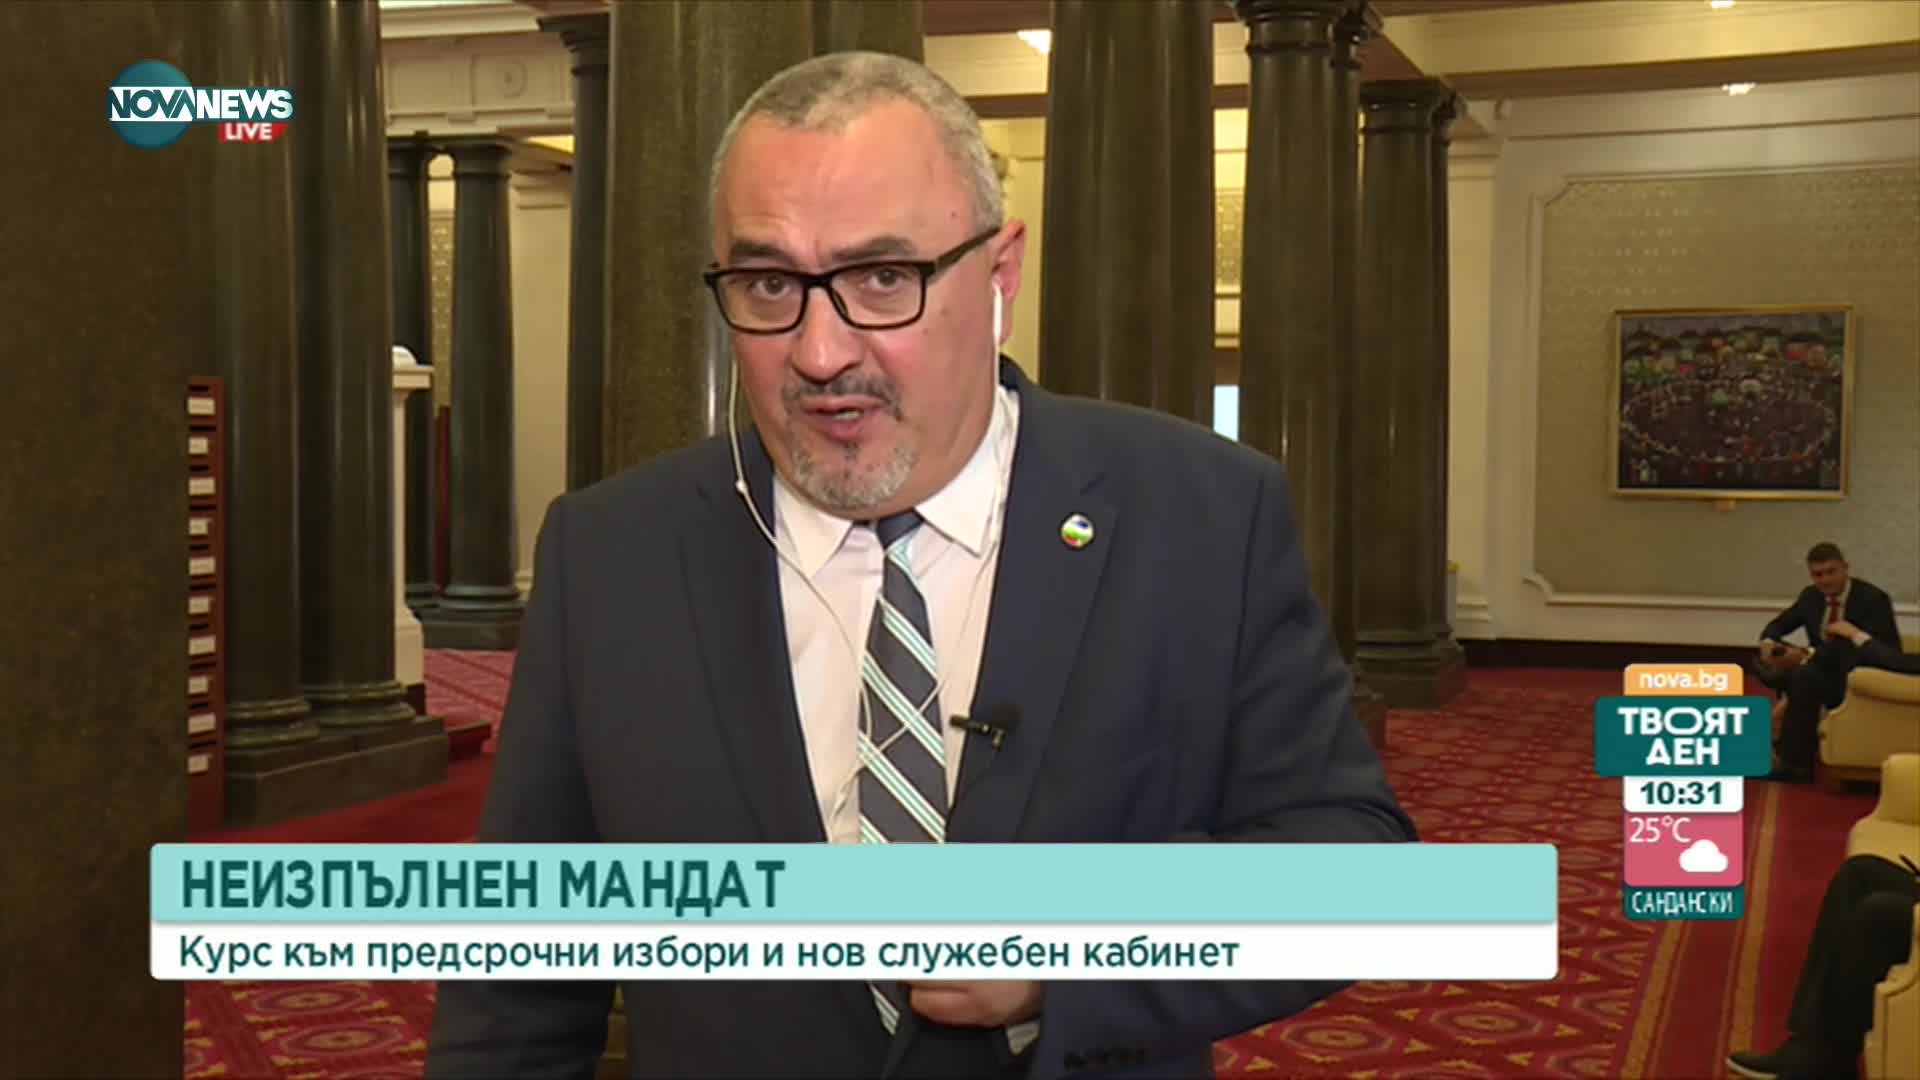 Депутат от ДБ: ИТН решиха, че егото им е над интересите на държавата и обществото